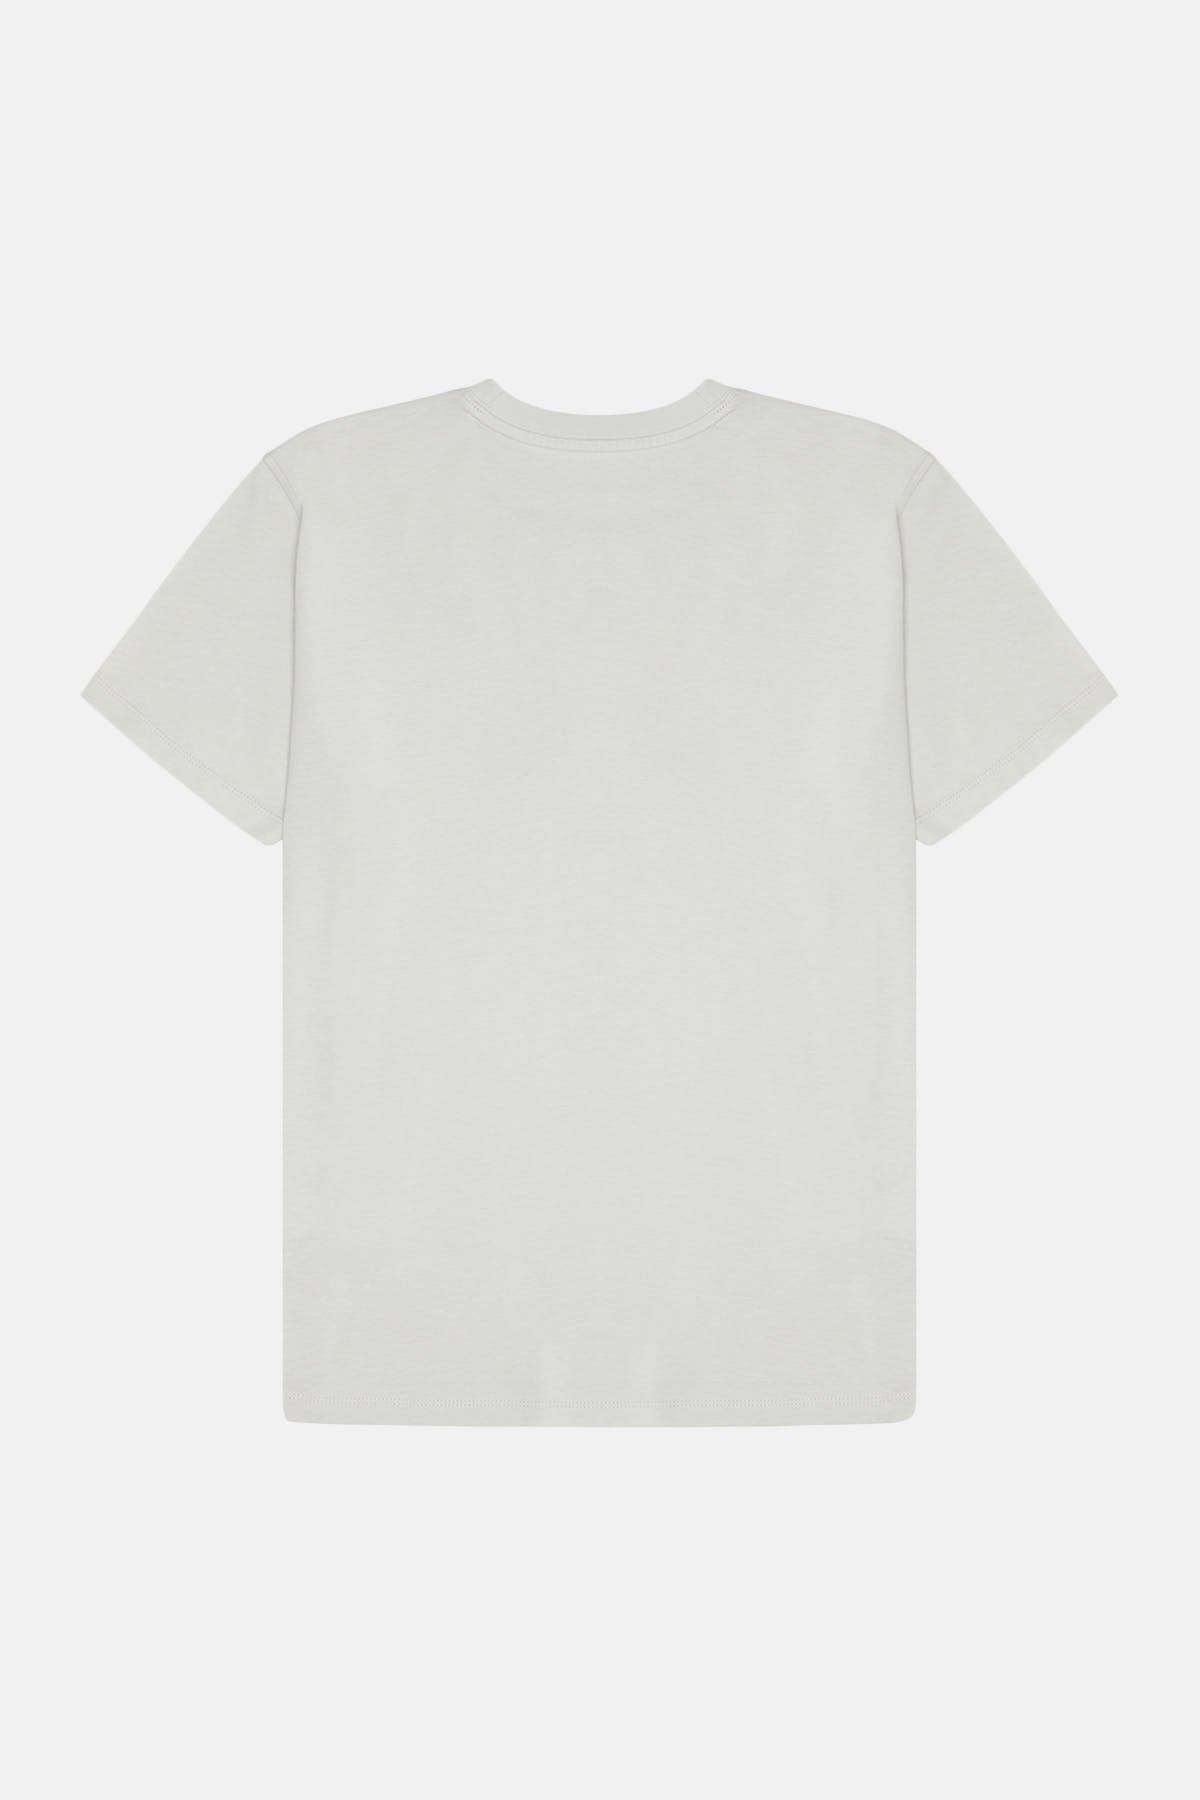 Kaplan Supreme T-shirt - Gri